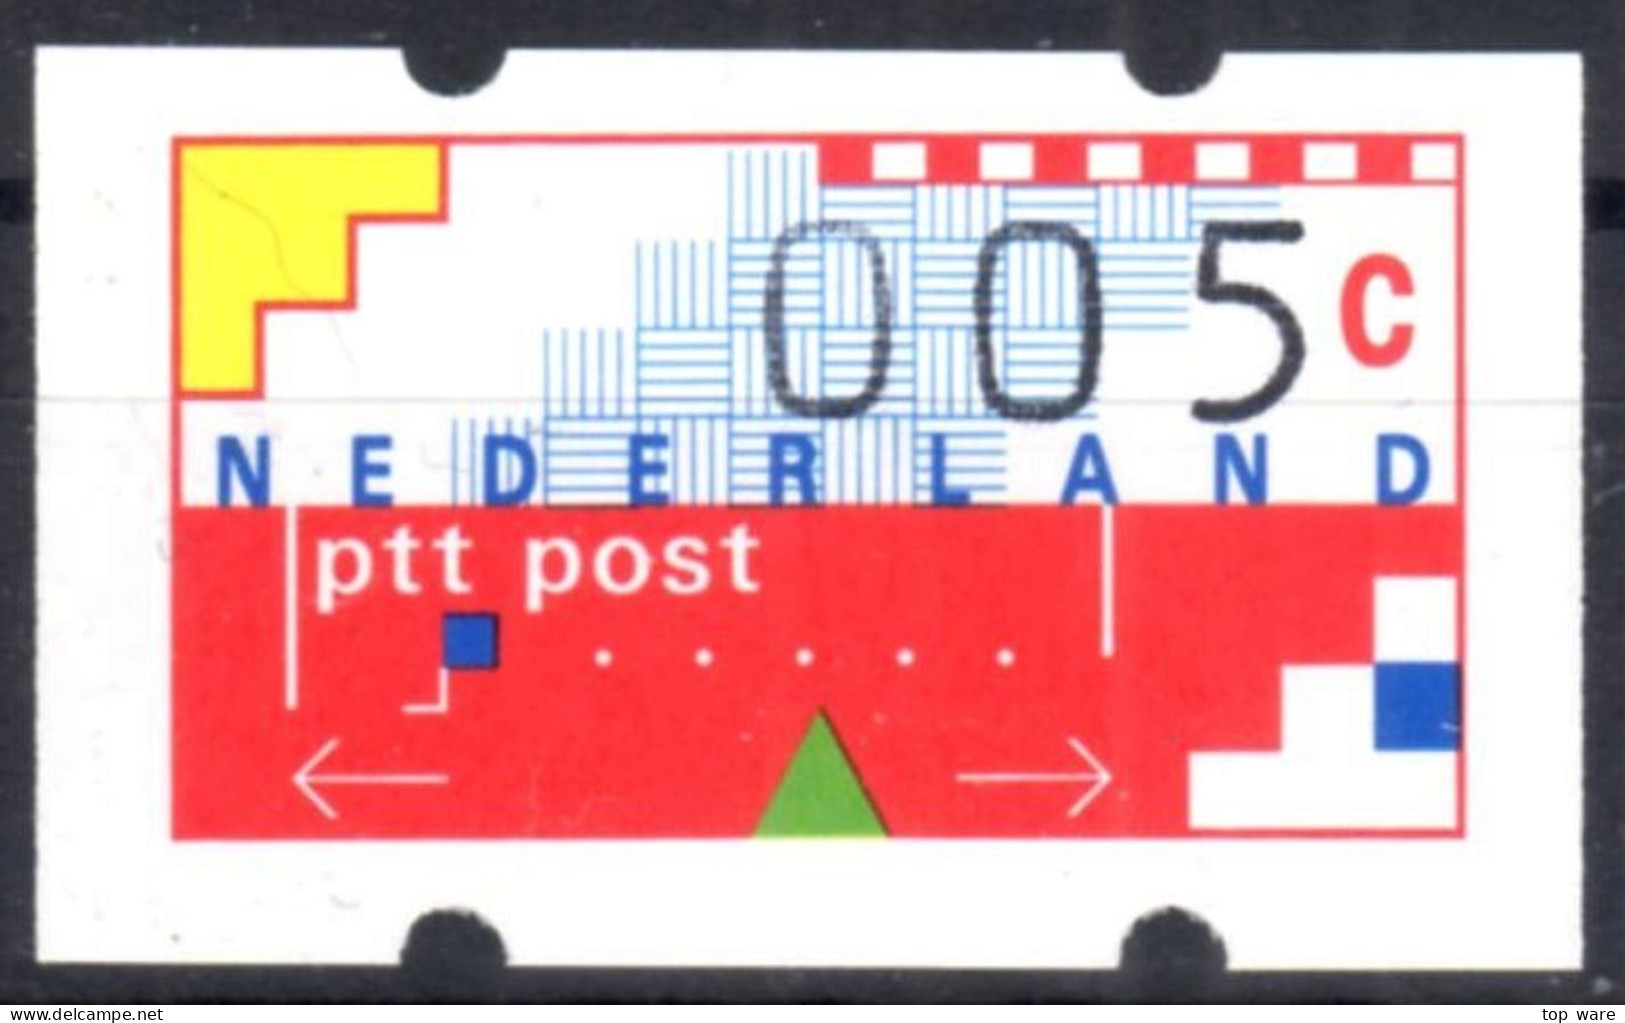 Niederlande Nederland ATM 1 Kleinstwert 5 Cent Postfrisch Mit Quittung Frama Klüssendorf Automatenmarken Etiquetas - Automatenmarken [ATM]